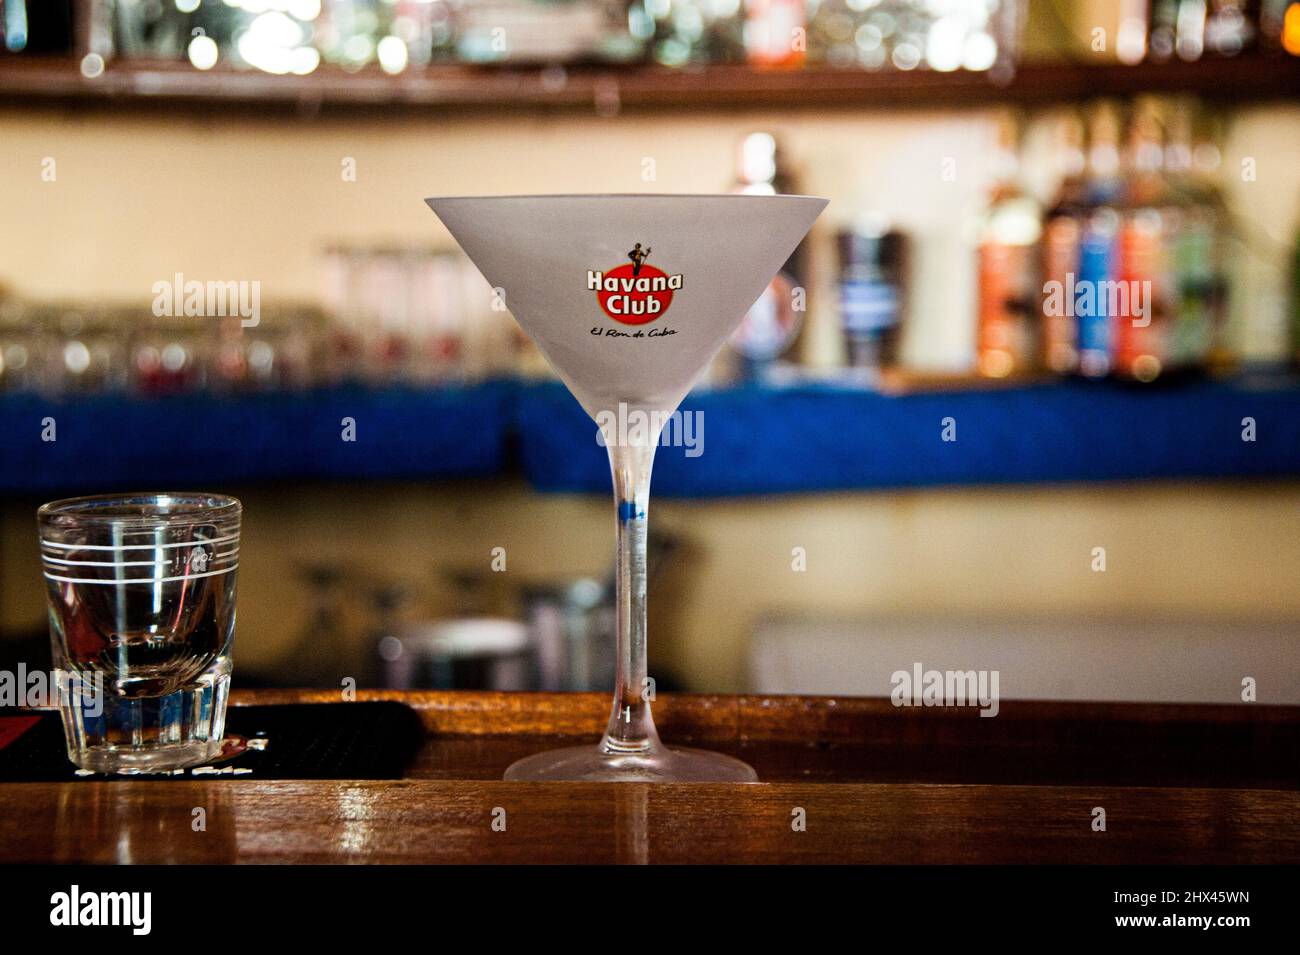 Salud und Cheers! Ein Glas Rum des Havana Club, der Rum von kuba, in einer Bar in der UNESCO-Weltkulturerbestadt Havanna, Kuba. Stockfoto